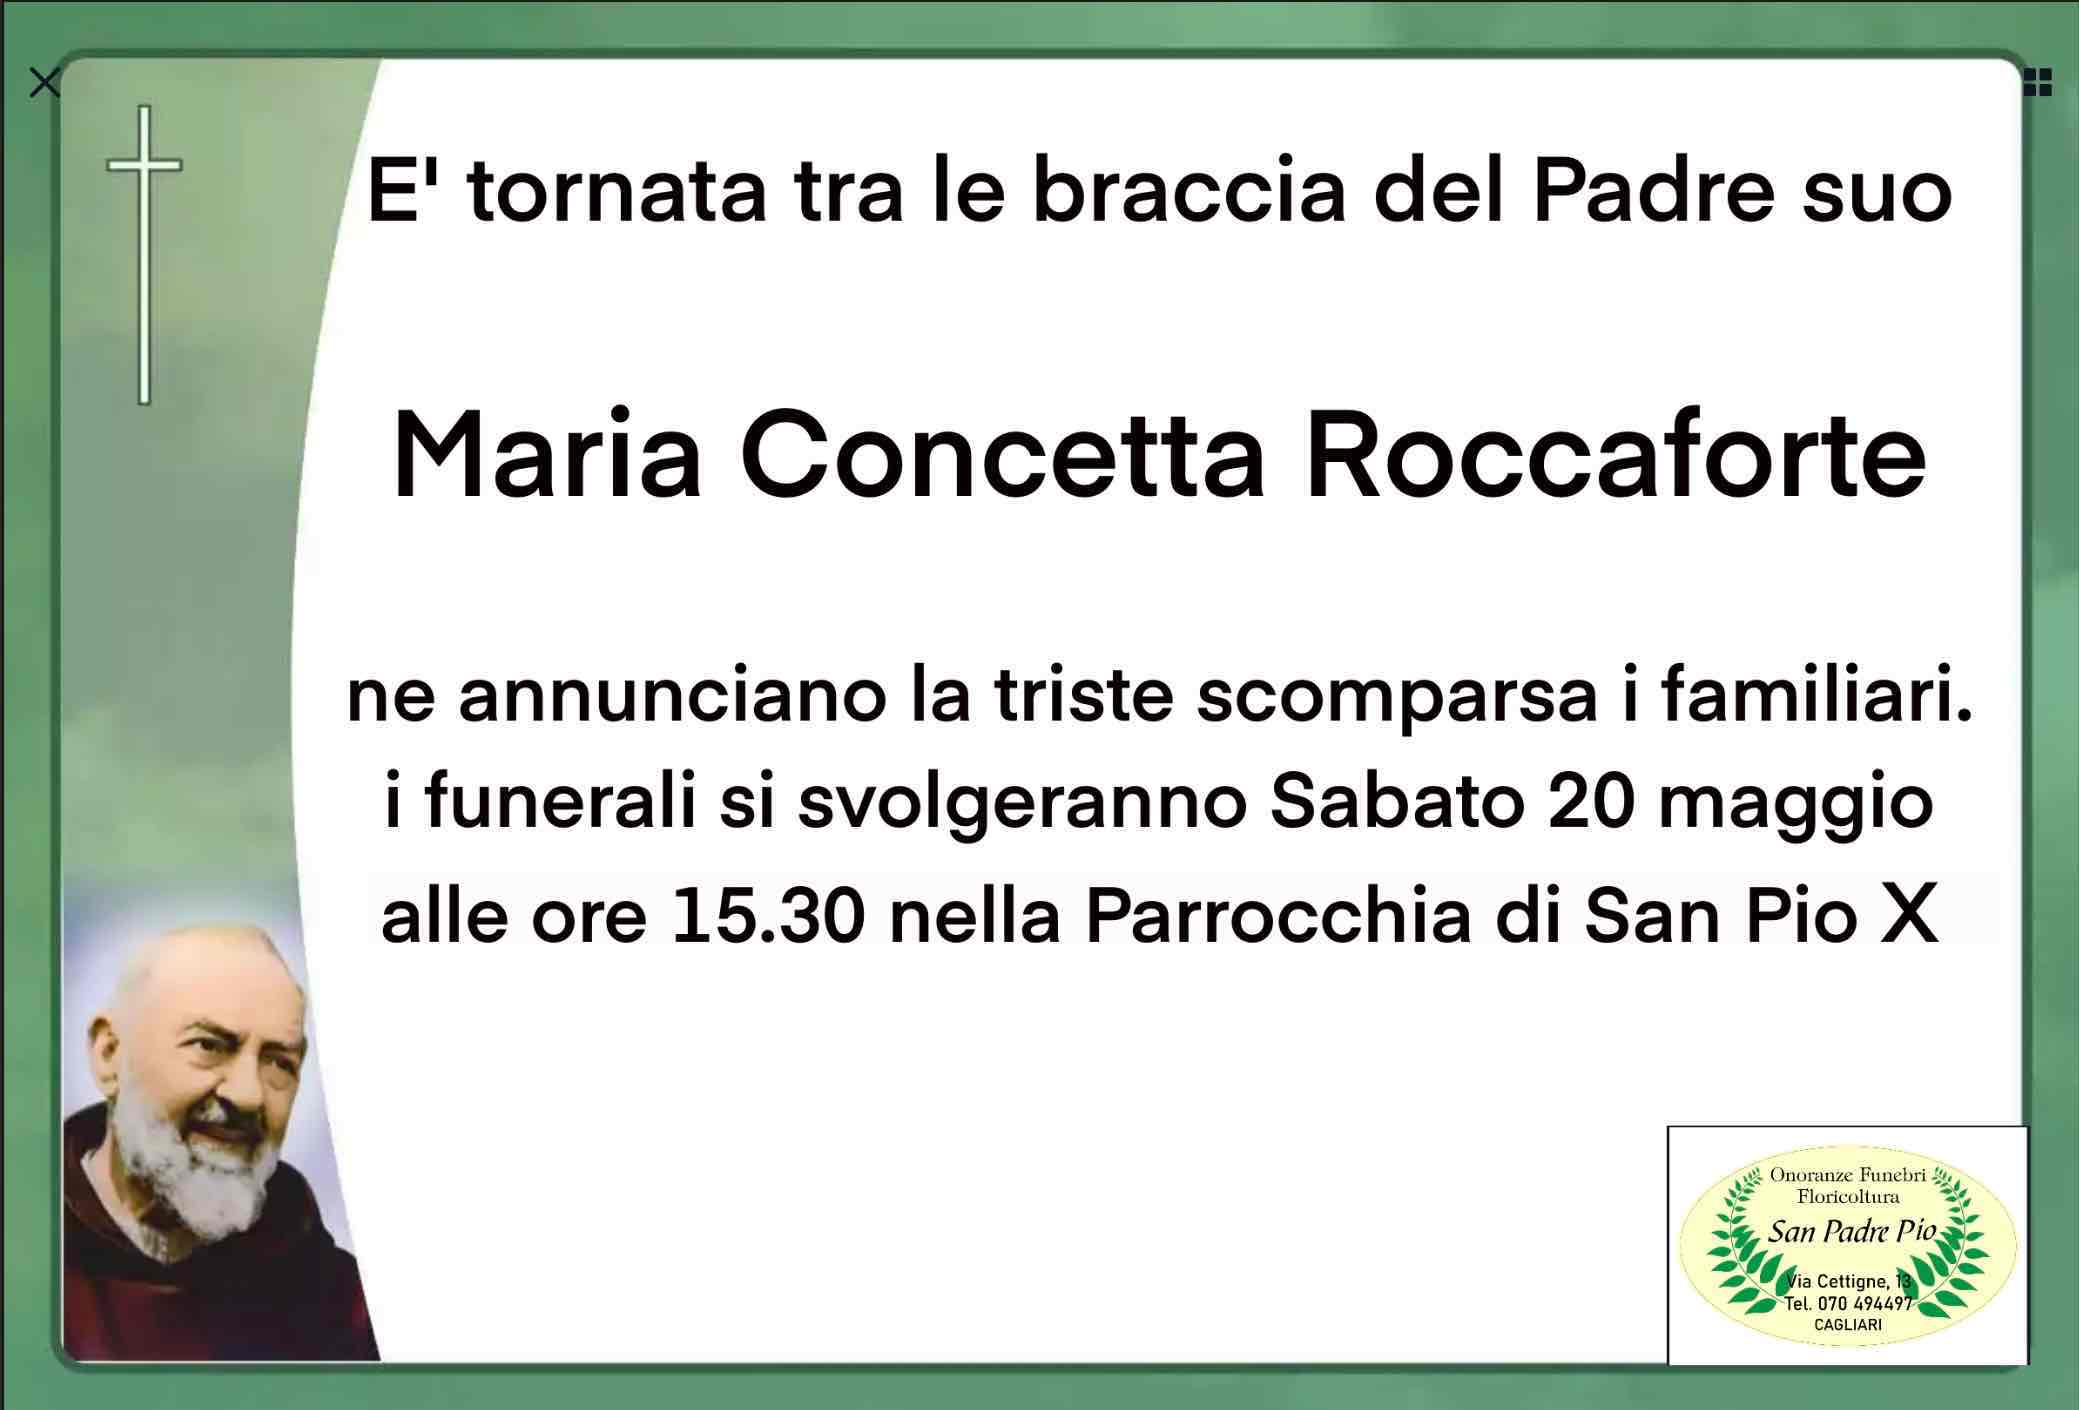 Maria Concetta Roccaforte